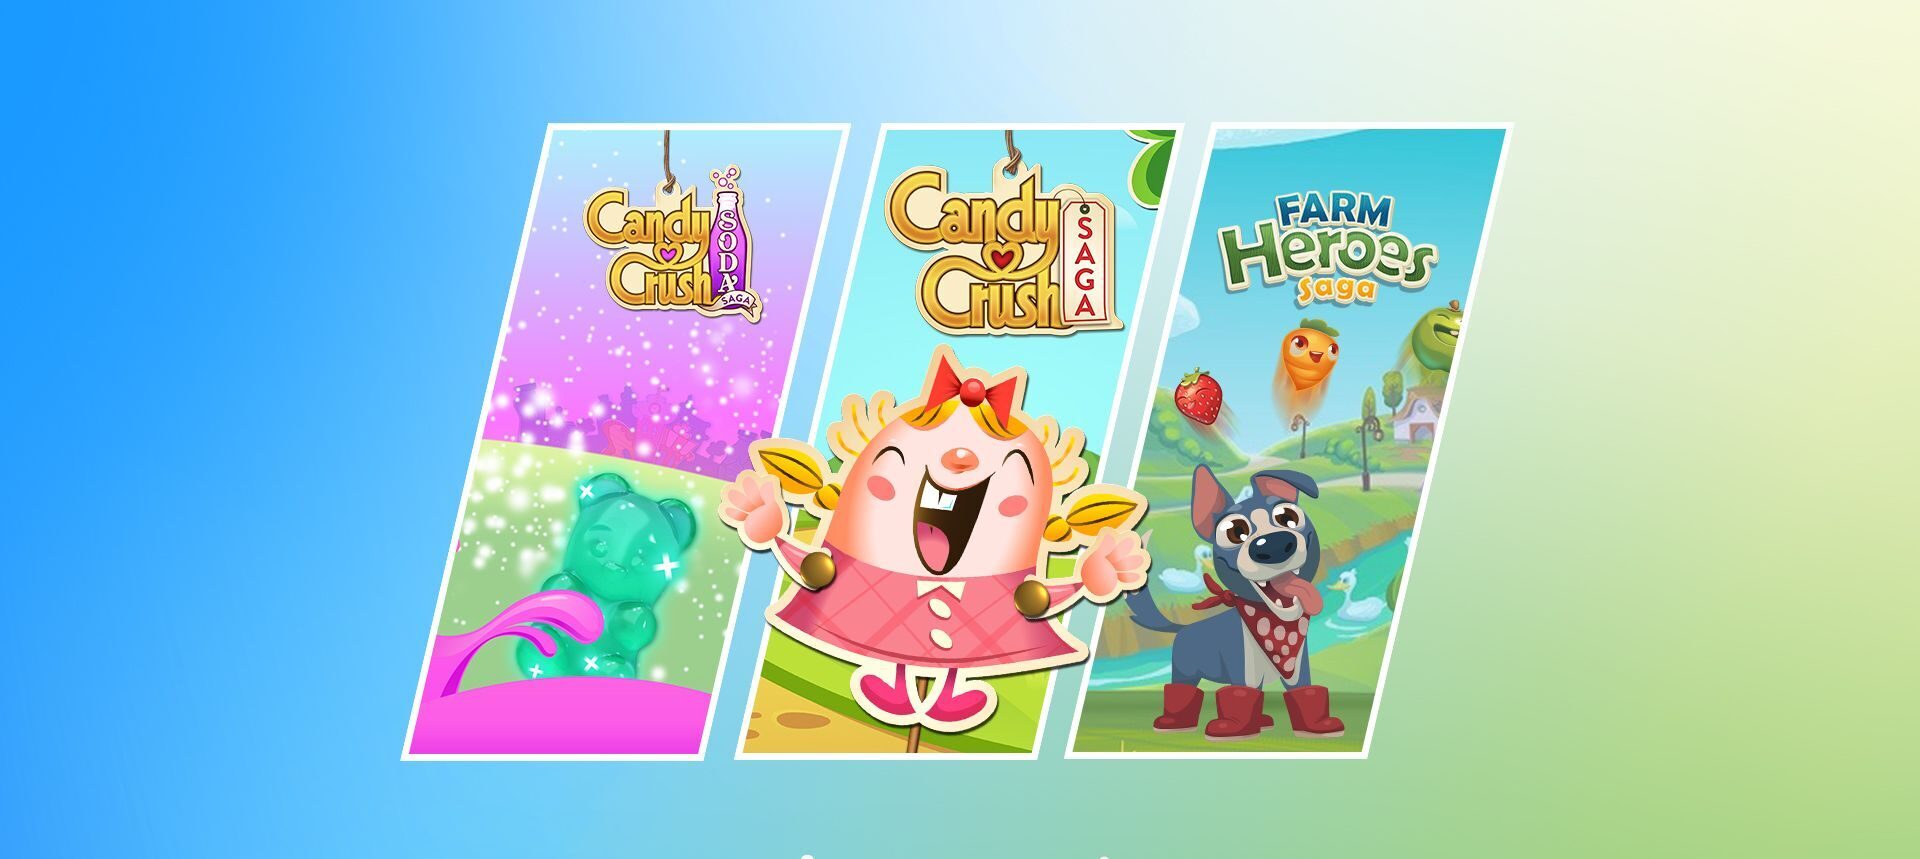 NV99  Prime Gaming anuncia conteúdos bônus para Candy Crush Saga